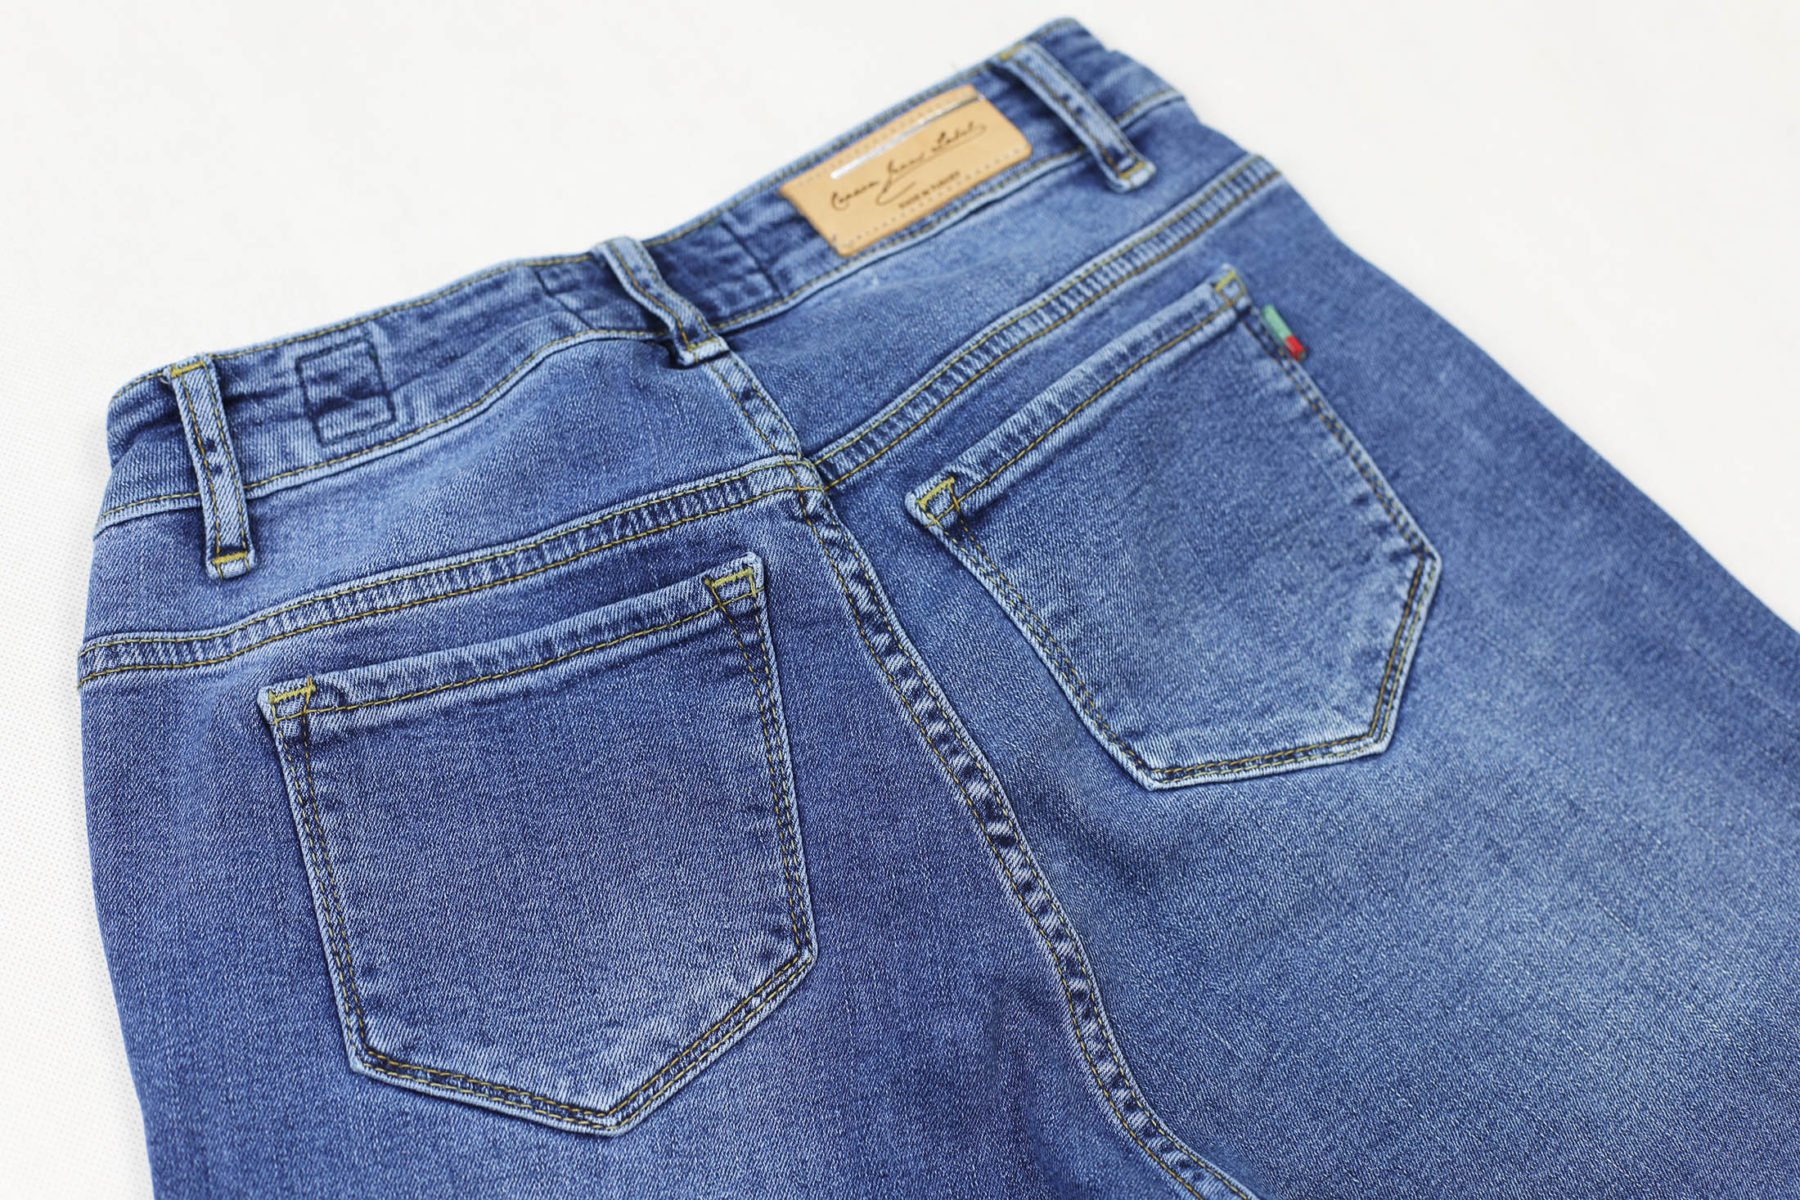 Damskie jeansy niebieskie comfort stretch, z przetarciami, stan wysoki, nogawka prosta.